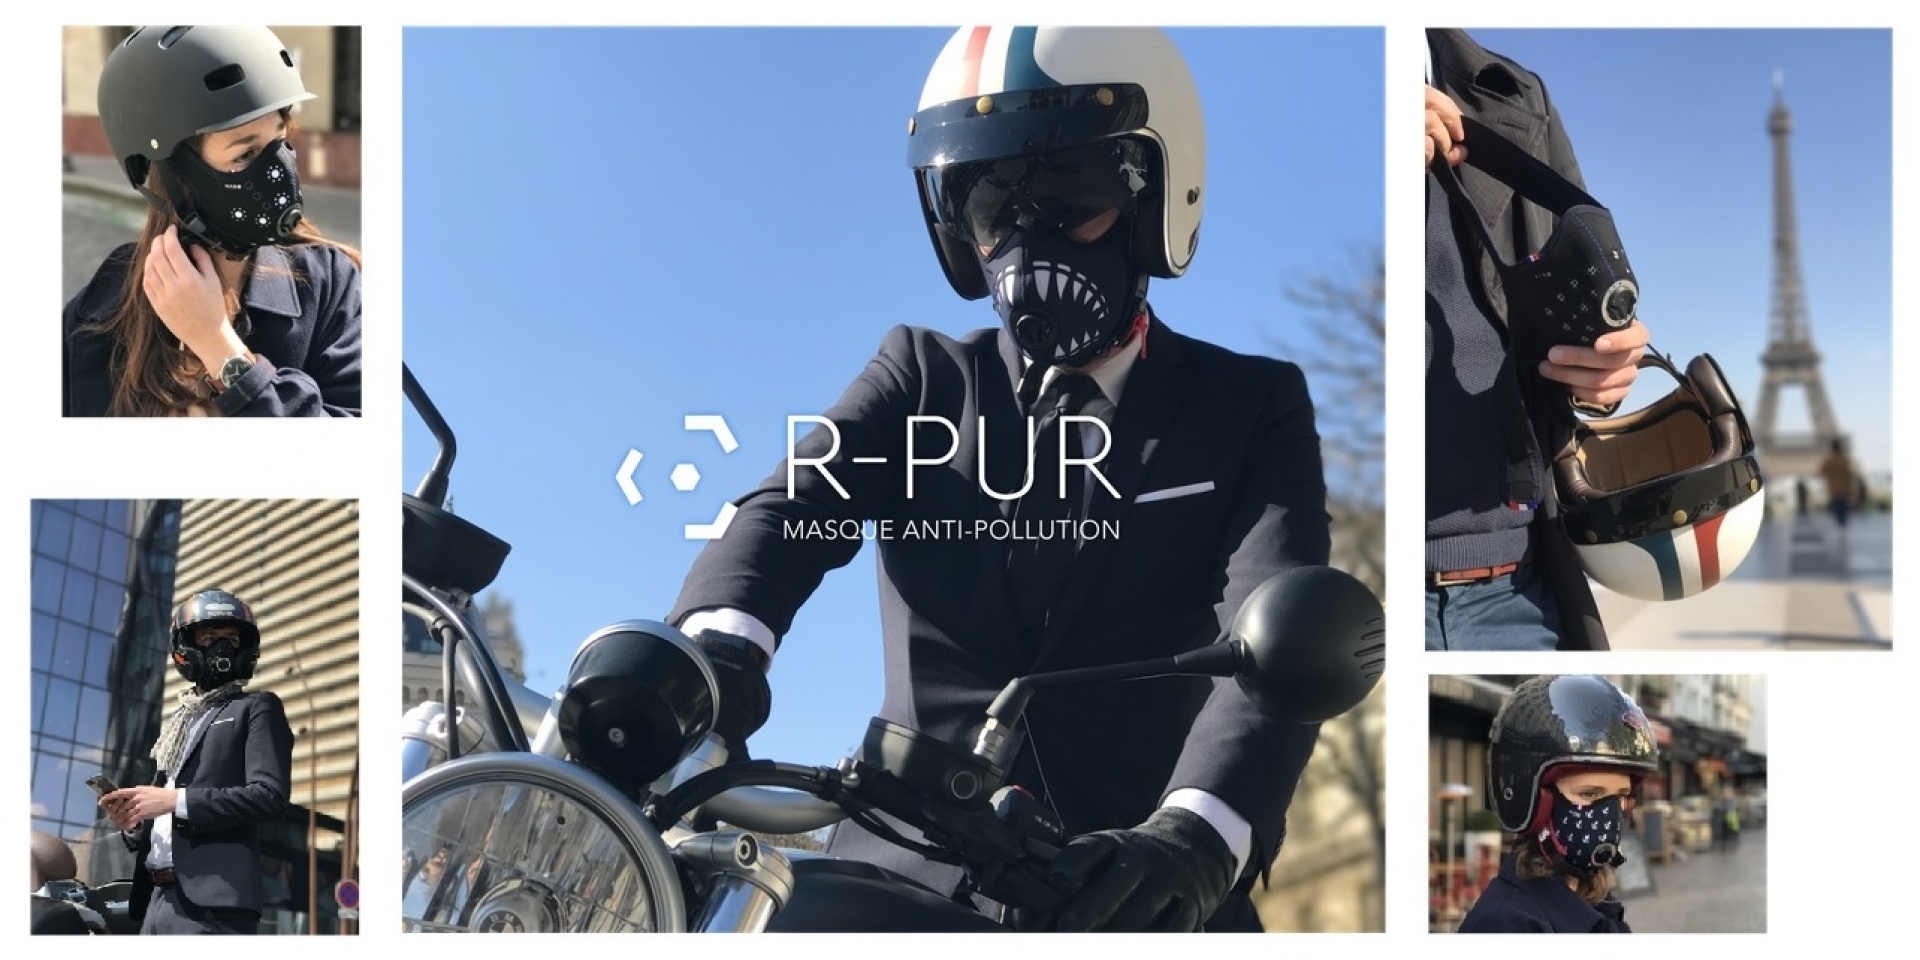 對抗空污的二輪通勤防護。法國R-PUR 騎士口罩